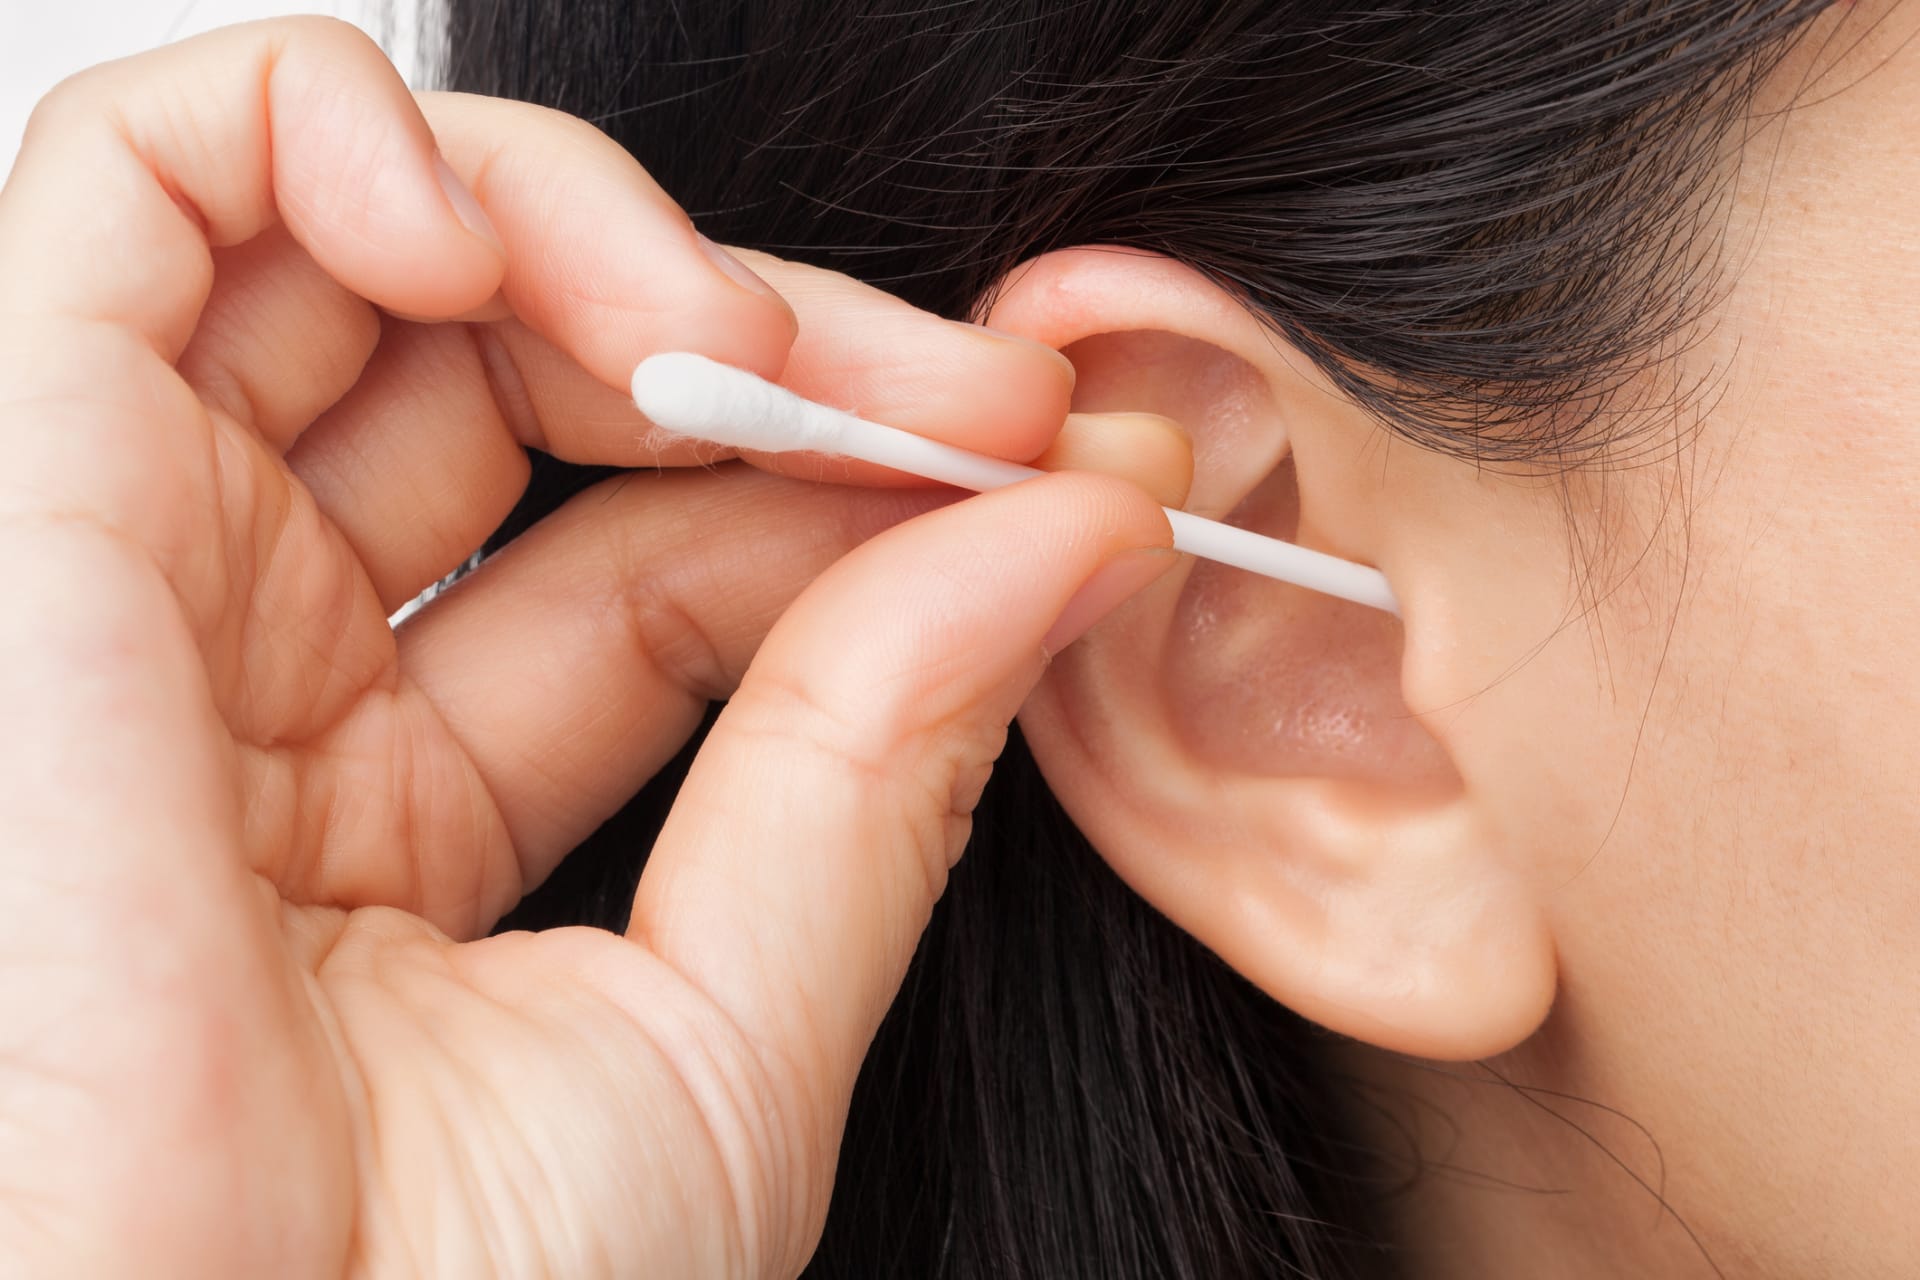 Tyčinky s vatou mají namále: Jak ale správně čistit uši?